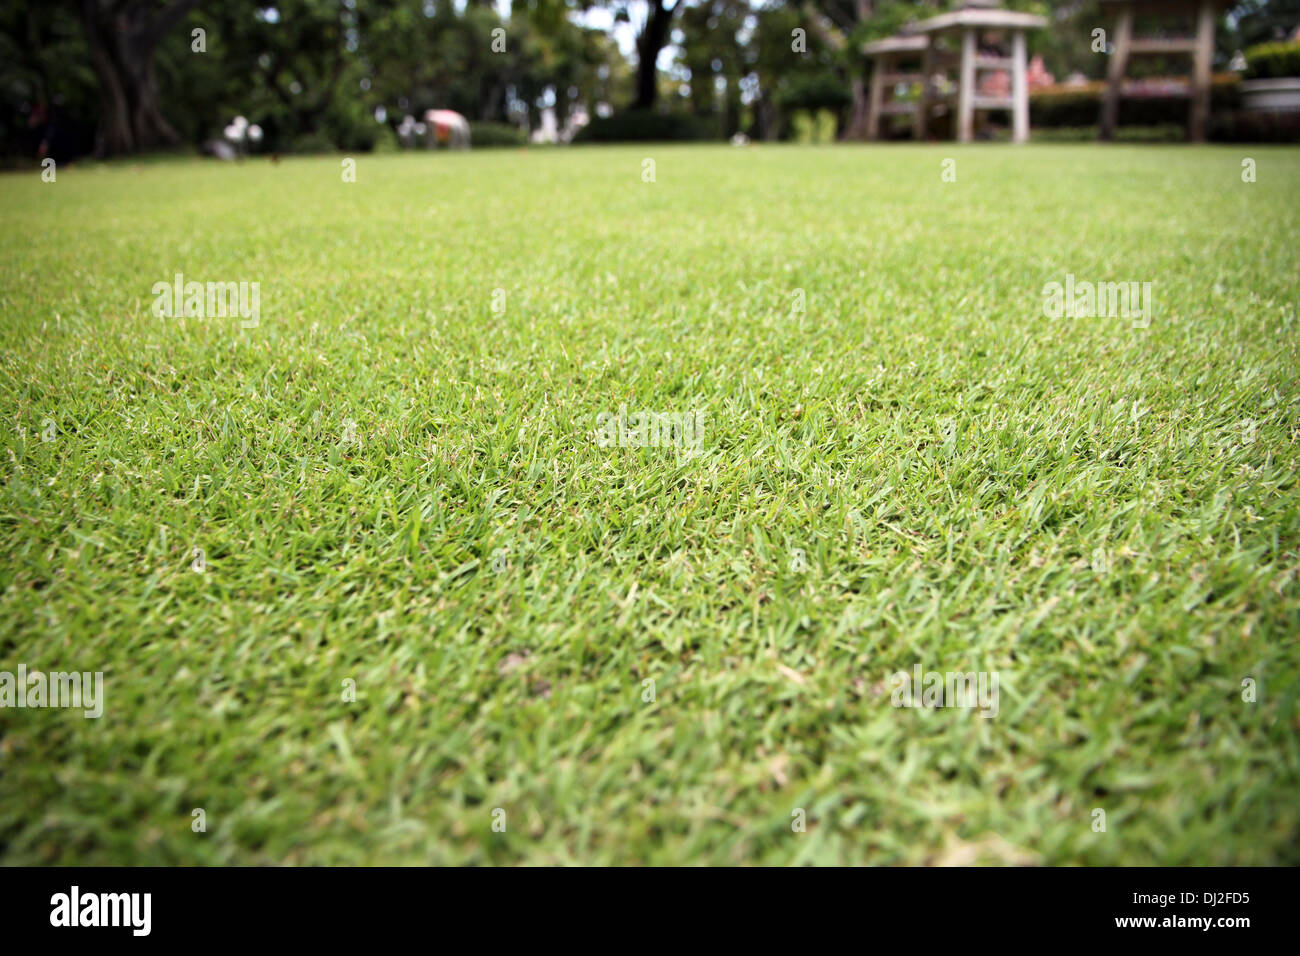 La photo libre d'herbe verte dans le jardin. Banque D'Images